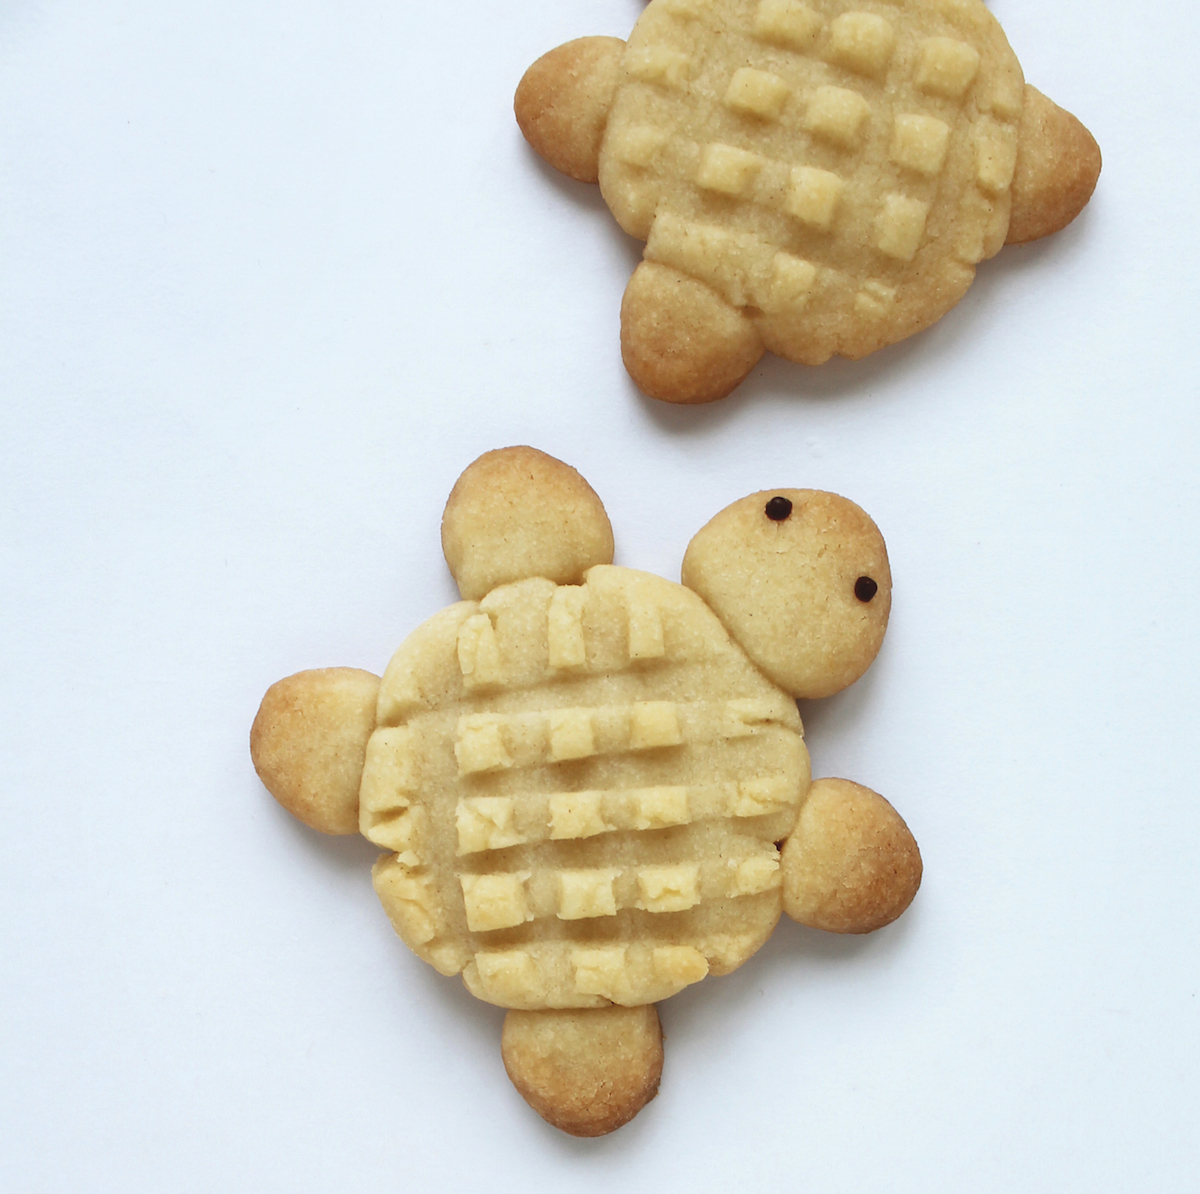 Decorating cookies via @kingarthurflour